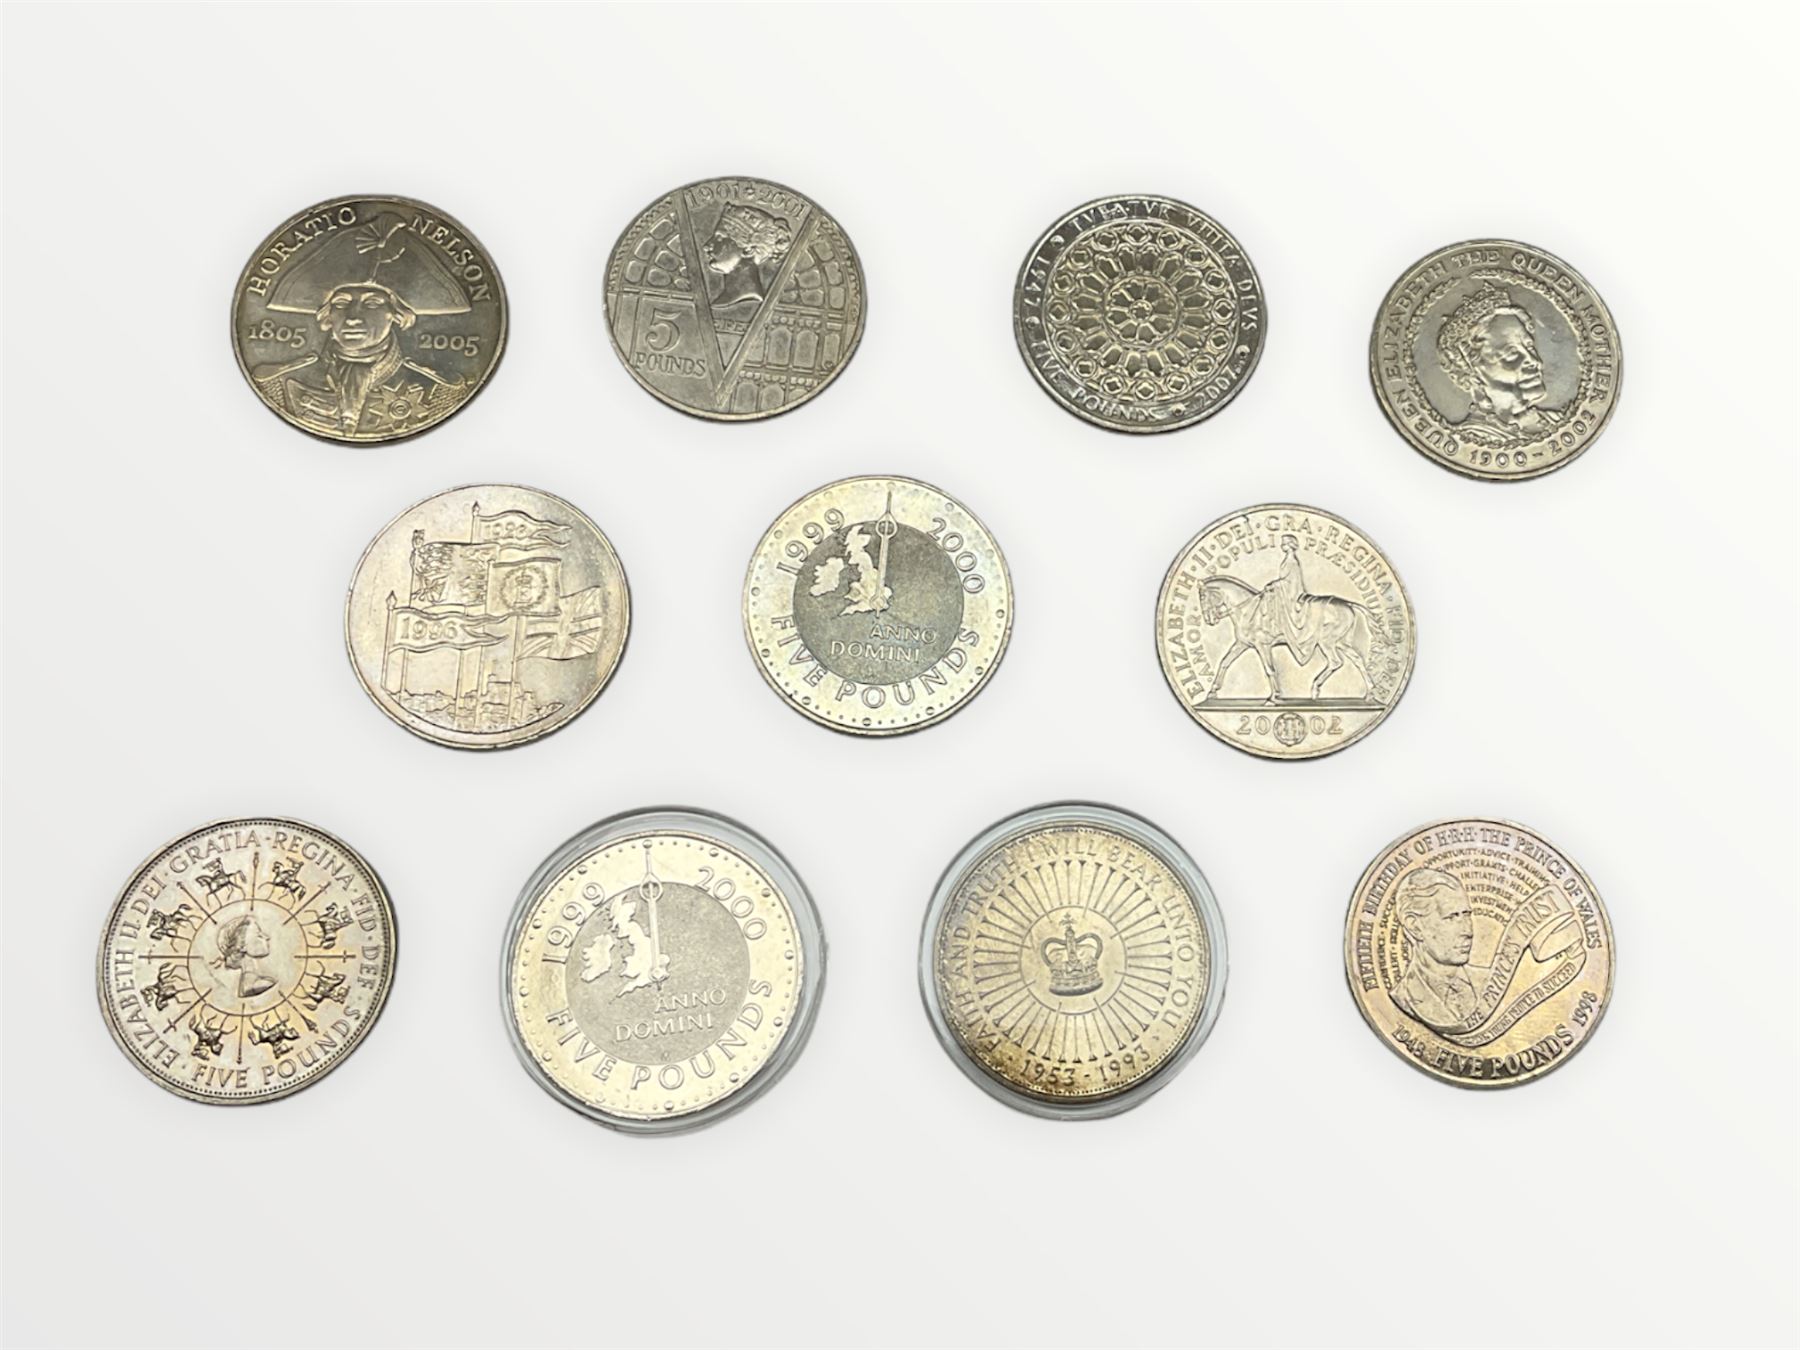 Eleven Queen Elizabeth II United Kingdom five pound coins (11)